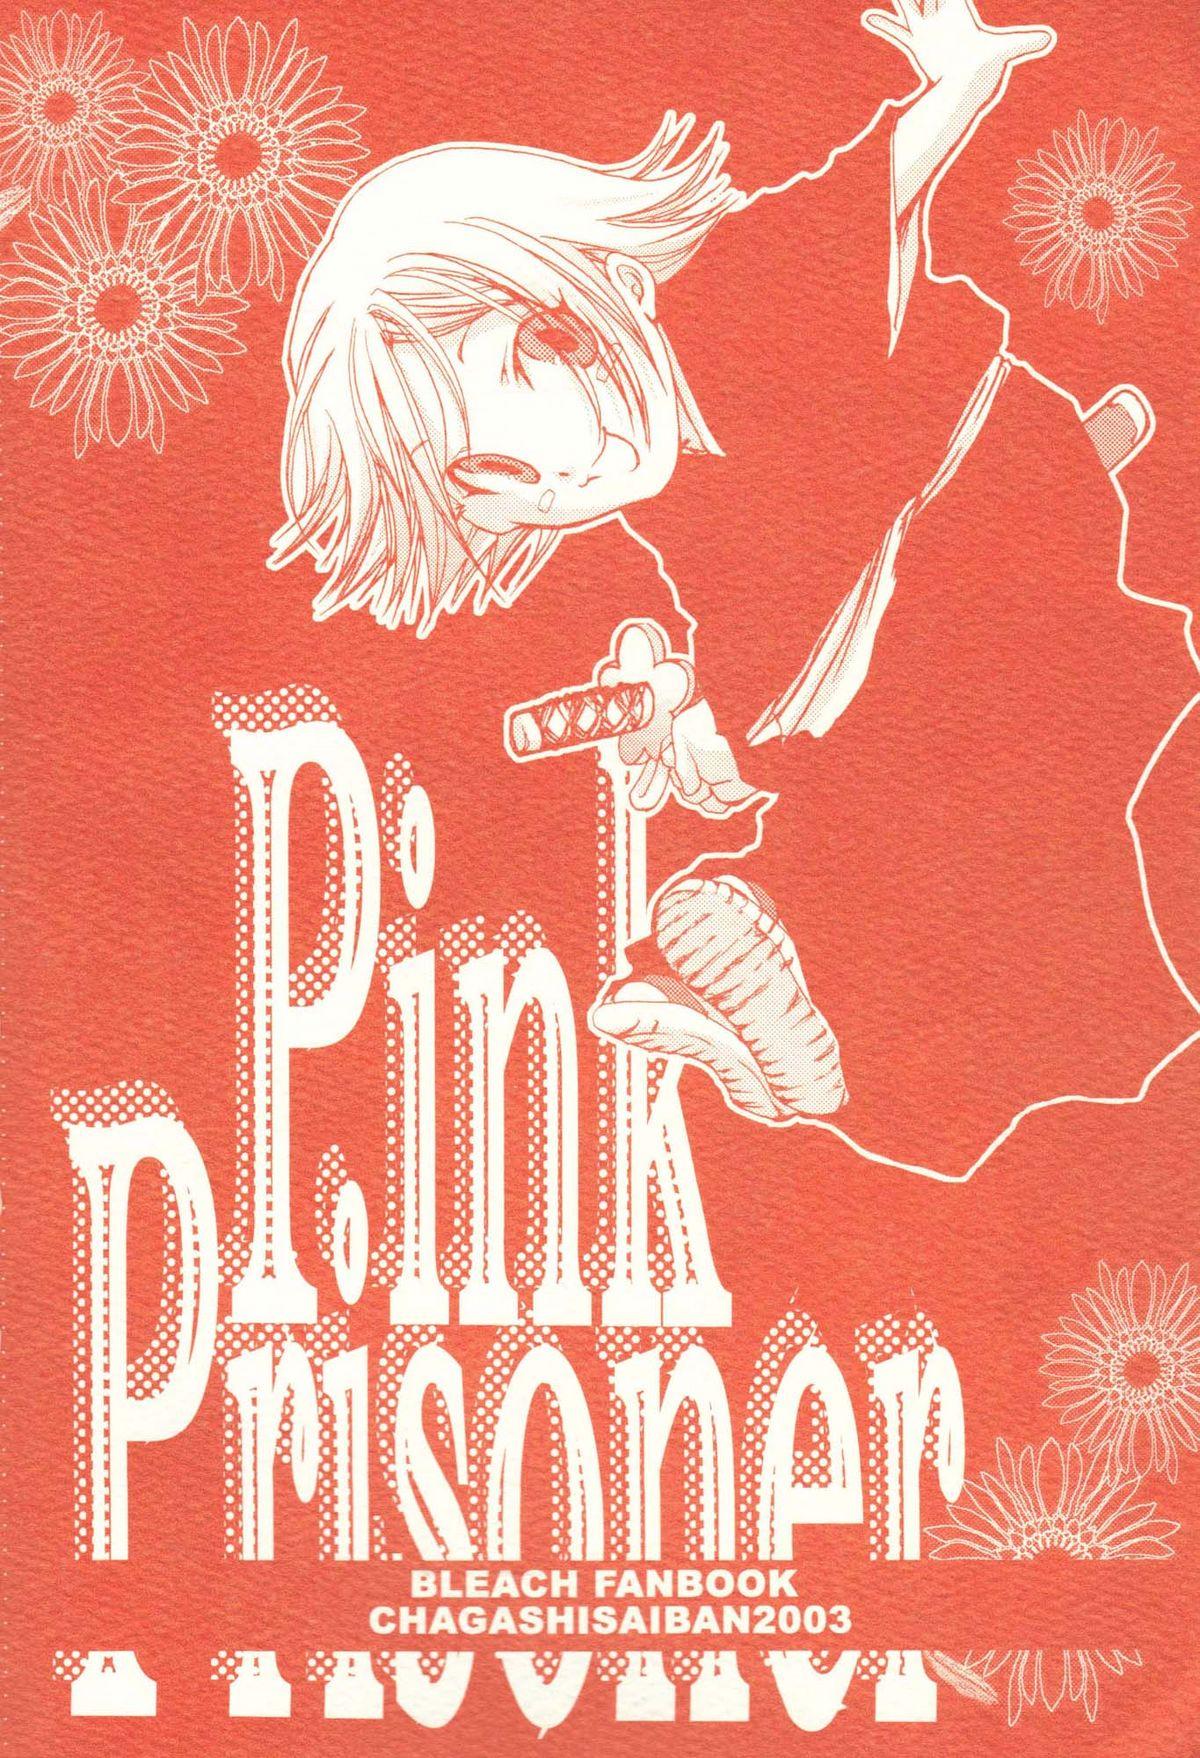 Dicks Pink Prisoner - Bleach Funk - Page 2